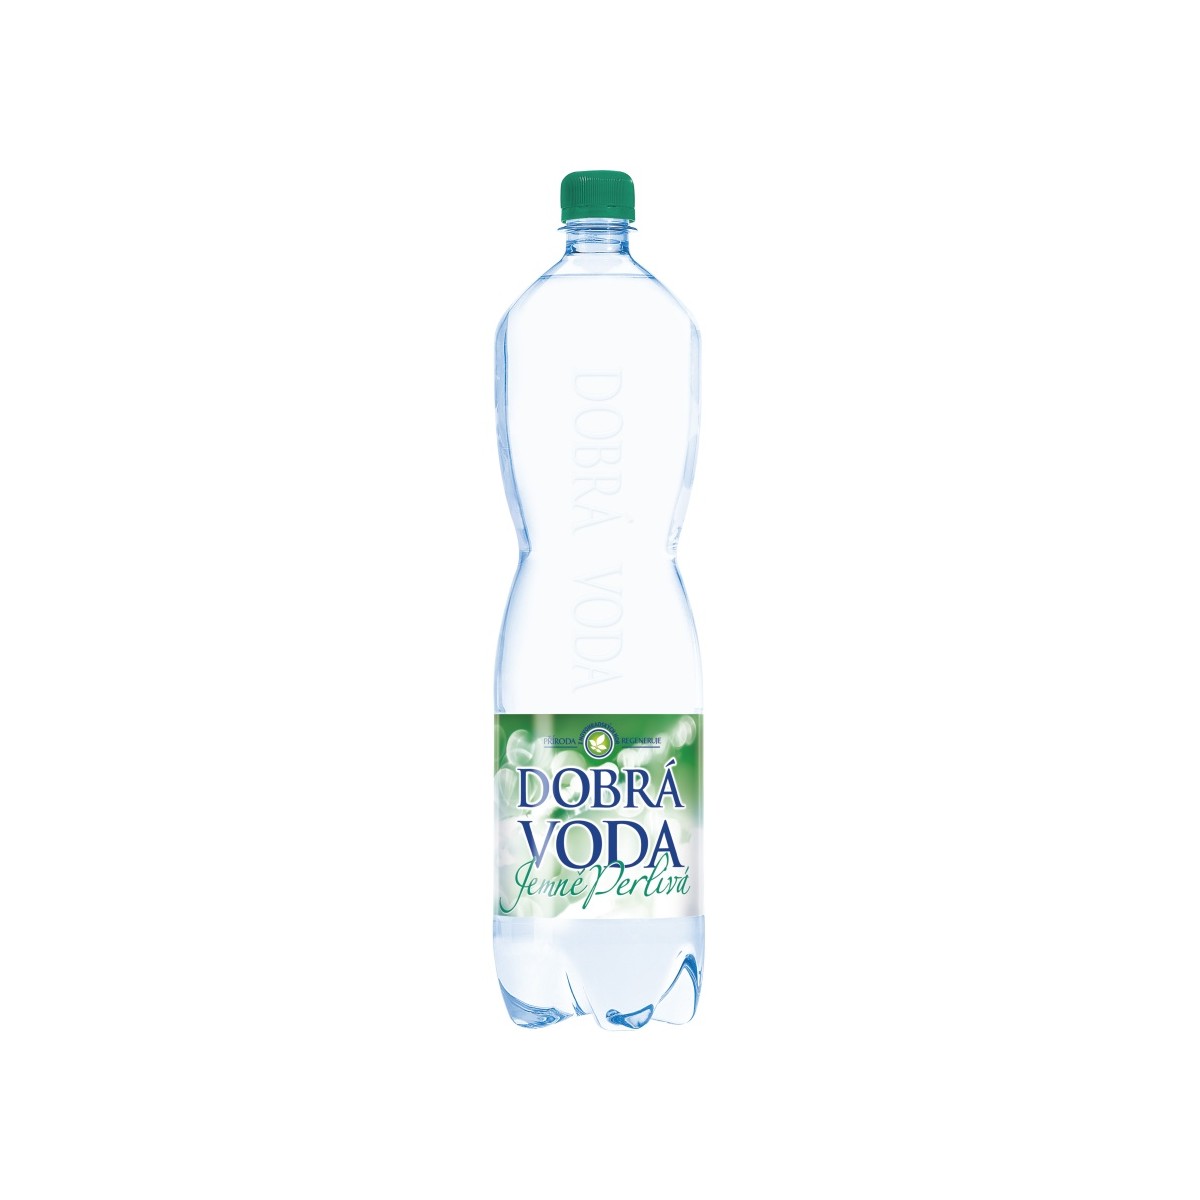 Dobrá voda jemně perlivá 1,5l - PET